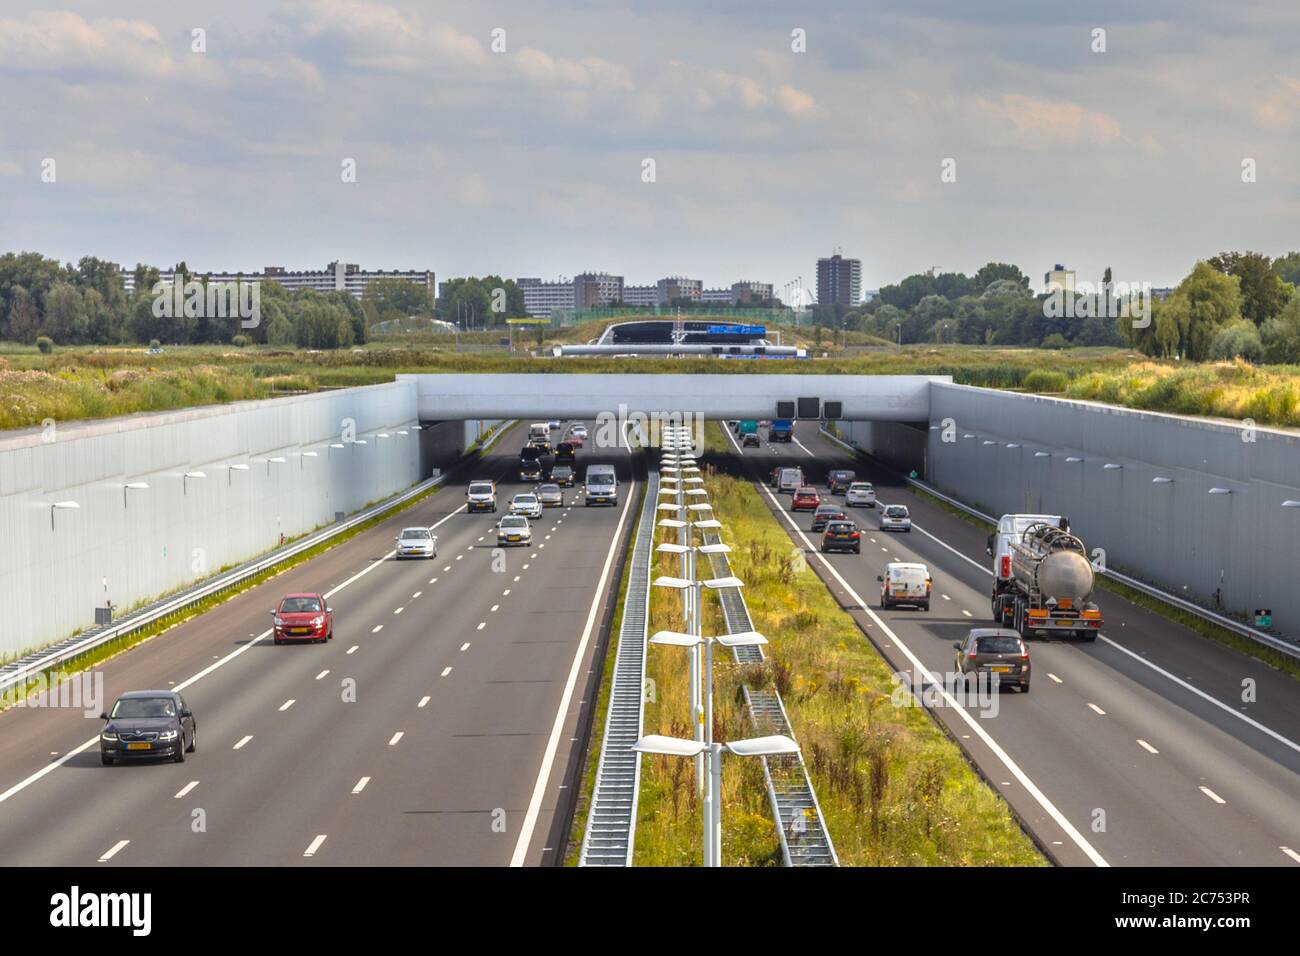 Nachmittags Verkehr auf der autobahn a4 in der Nähe von Den Haag Randstad. Autobahnkreuzung Aquadukt Tunnel mit Stadtgebiet von Rotterdam im Hintergrund, Niederlande. Stockfoto